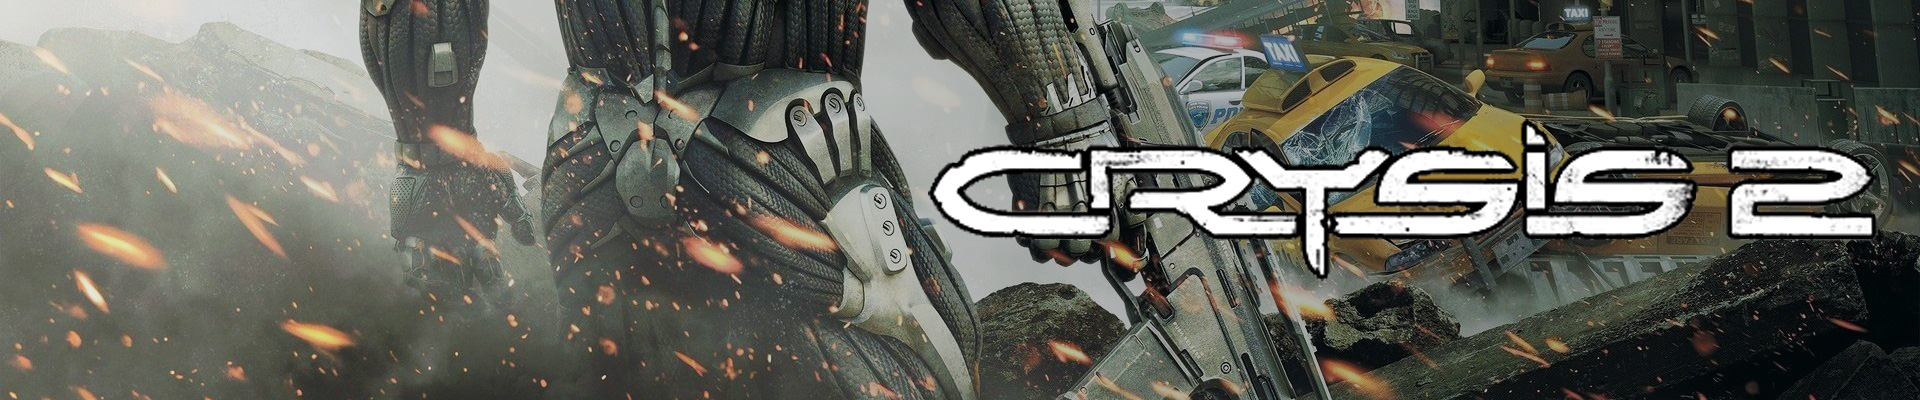 Клардендум: Crysis 2